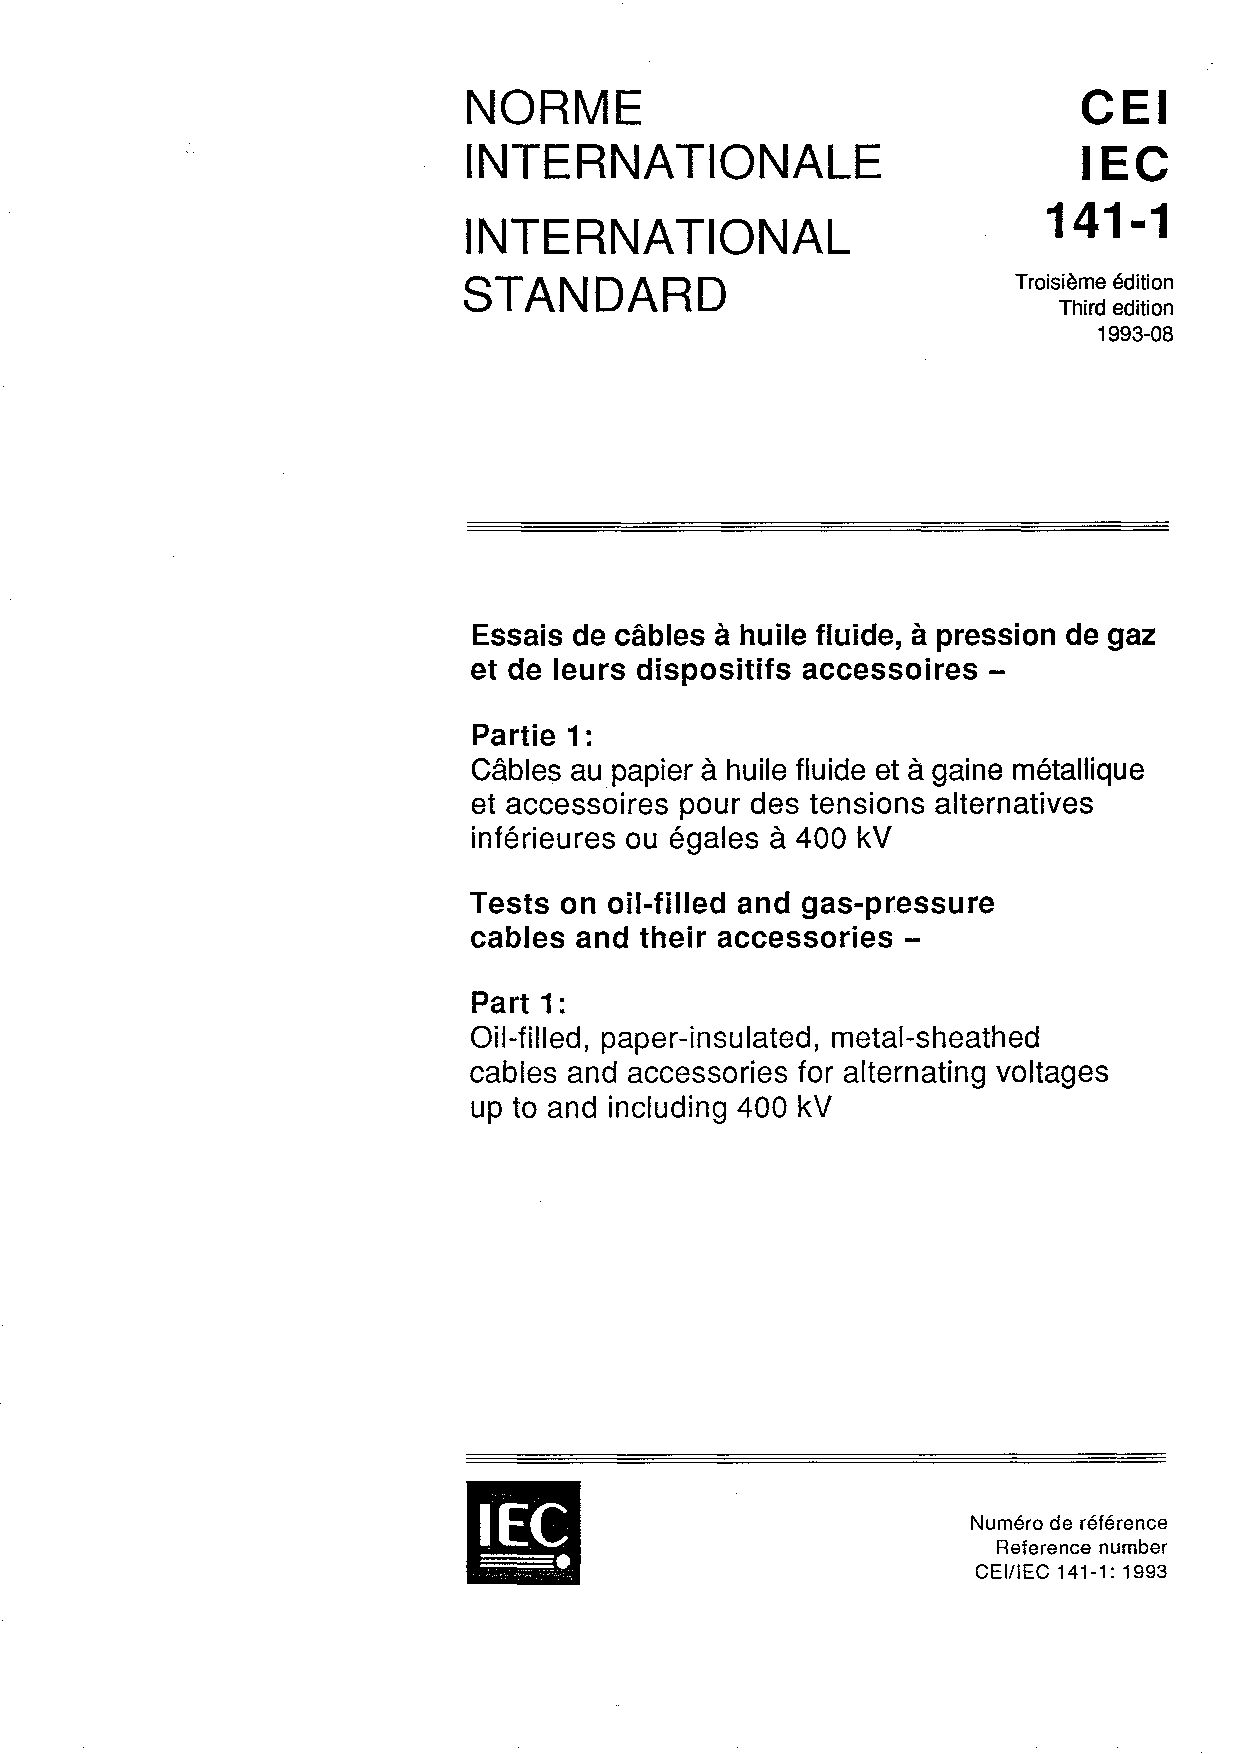 IEC 60141-1-1993